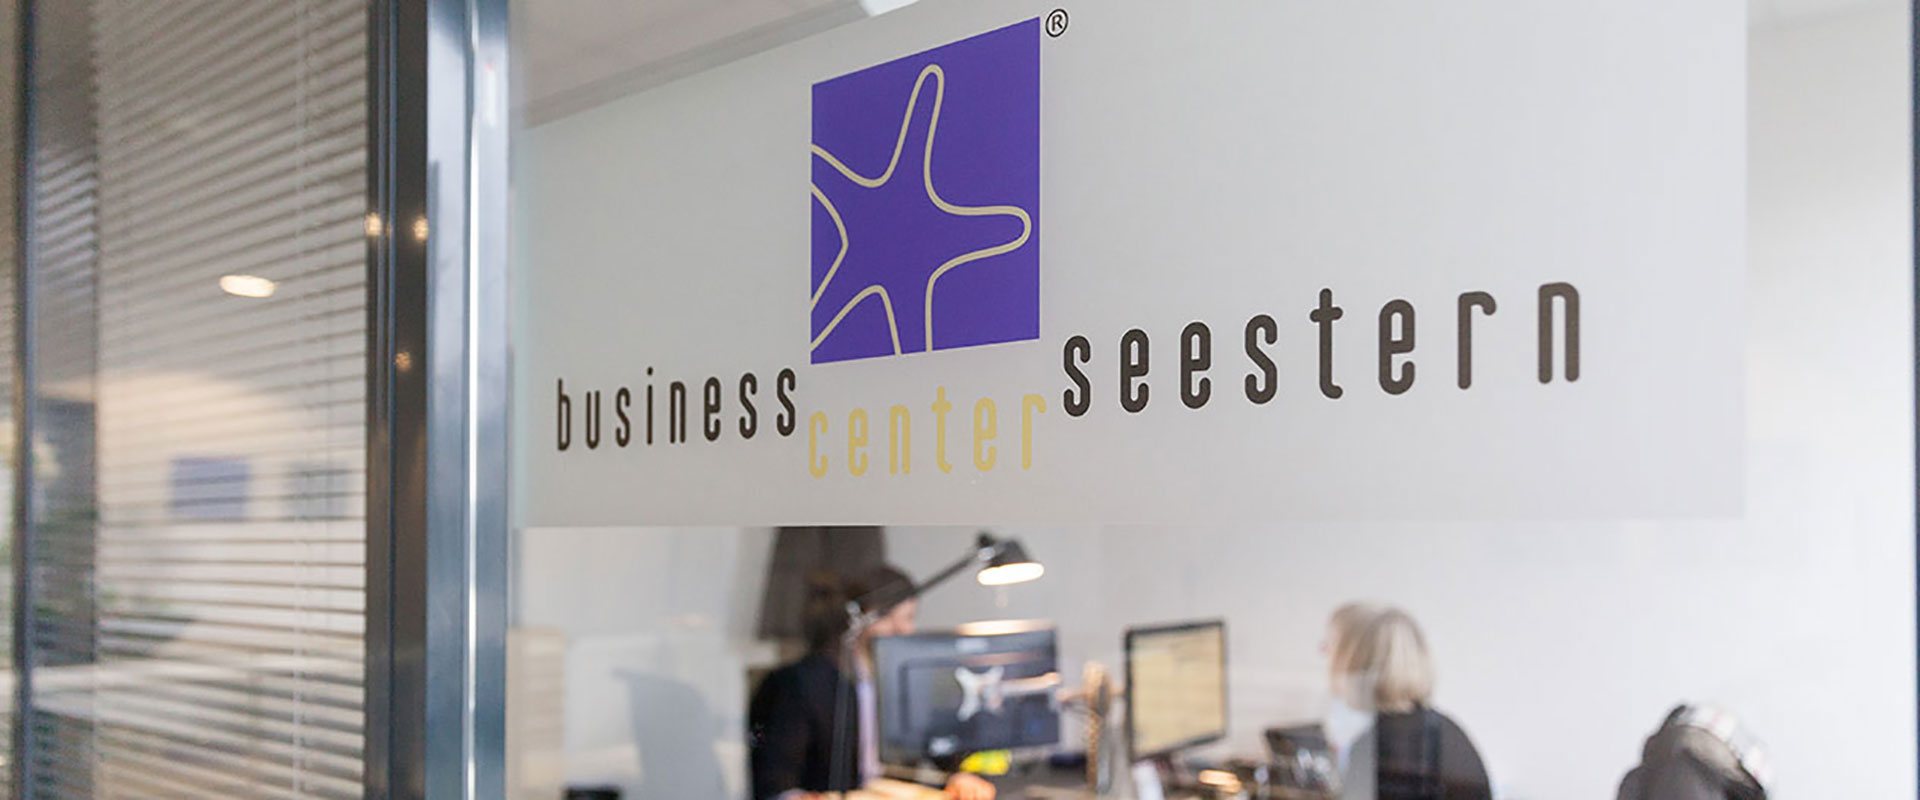 Logo des Business Center Seestern an Fenster im Büro